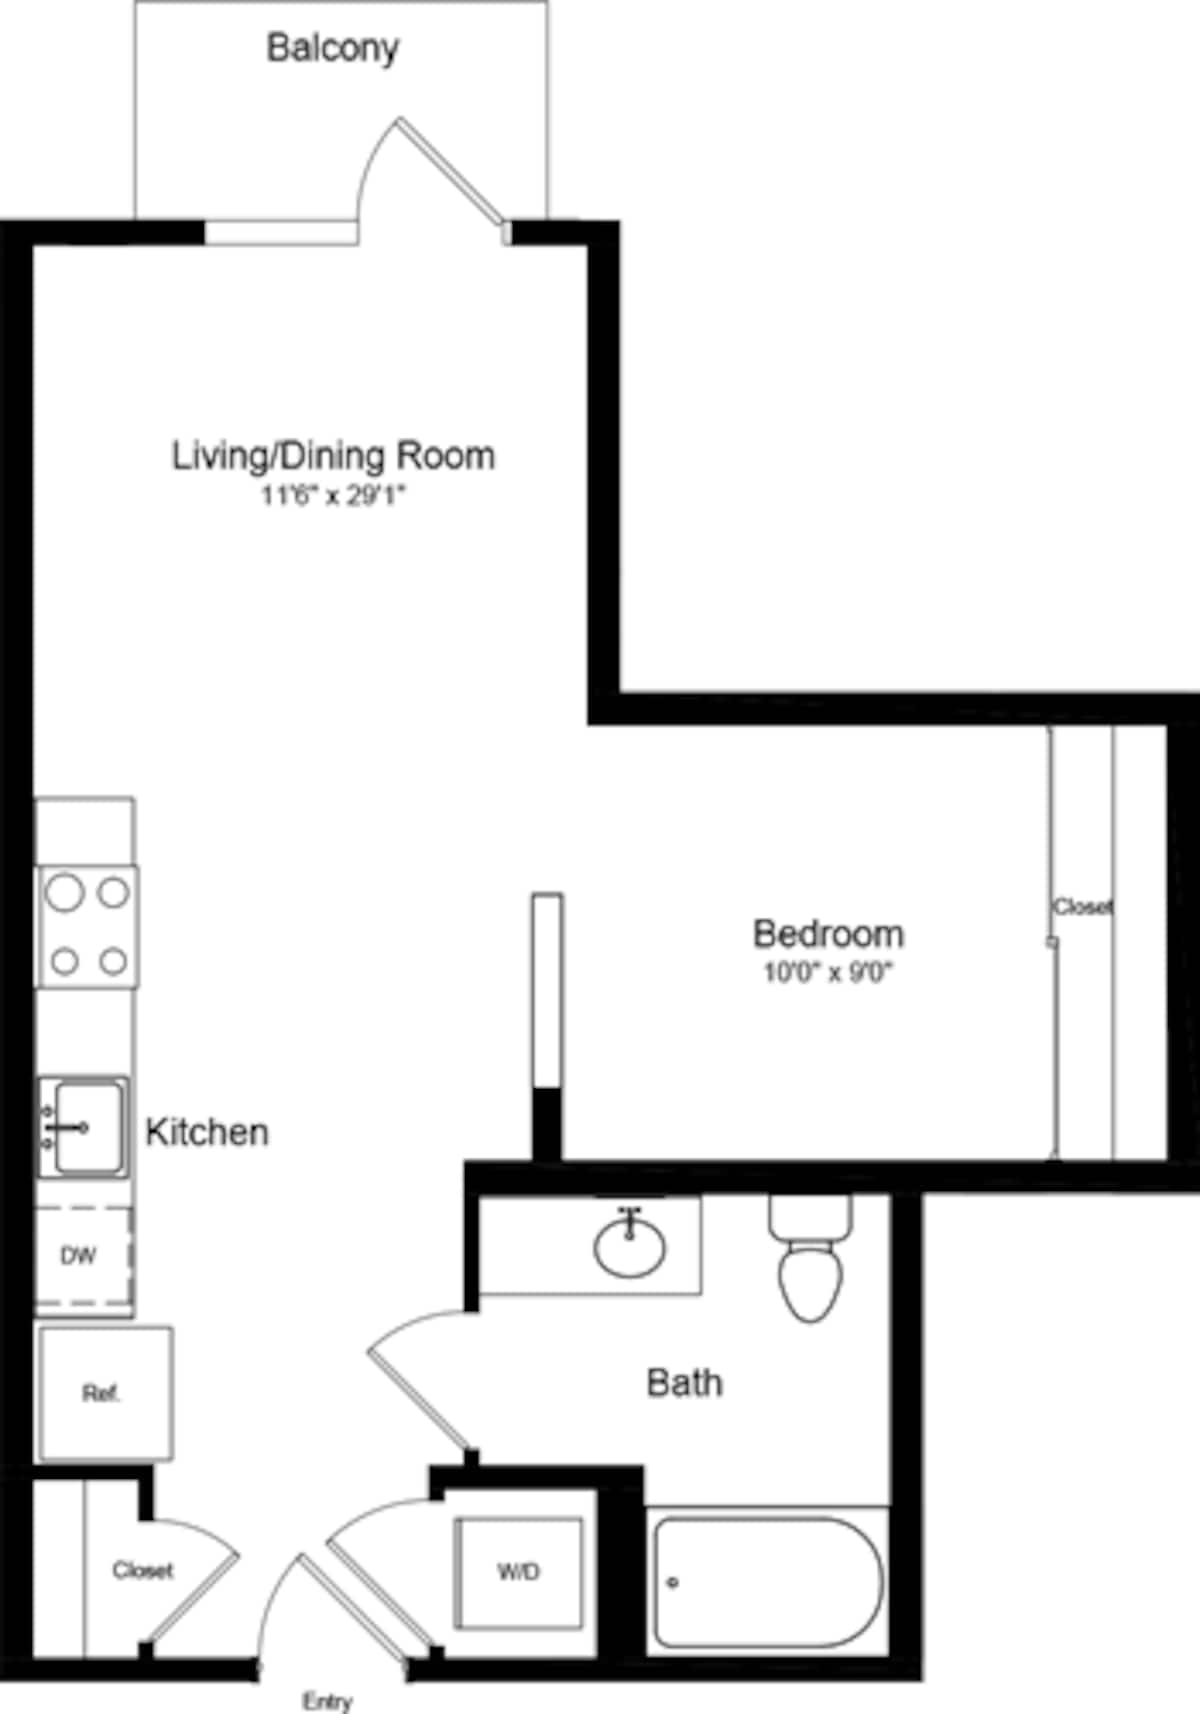 Floorplan diagram for Junior 1 Bedroom with Balcony, showing 1 bedroom